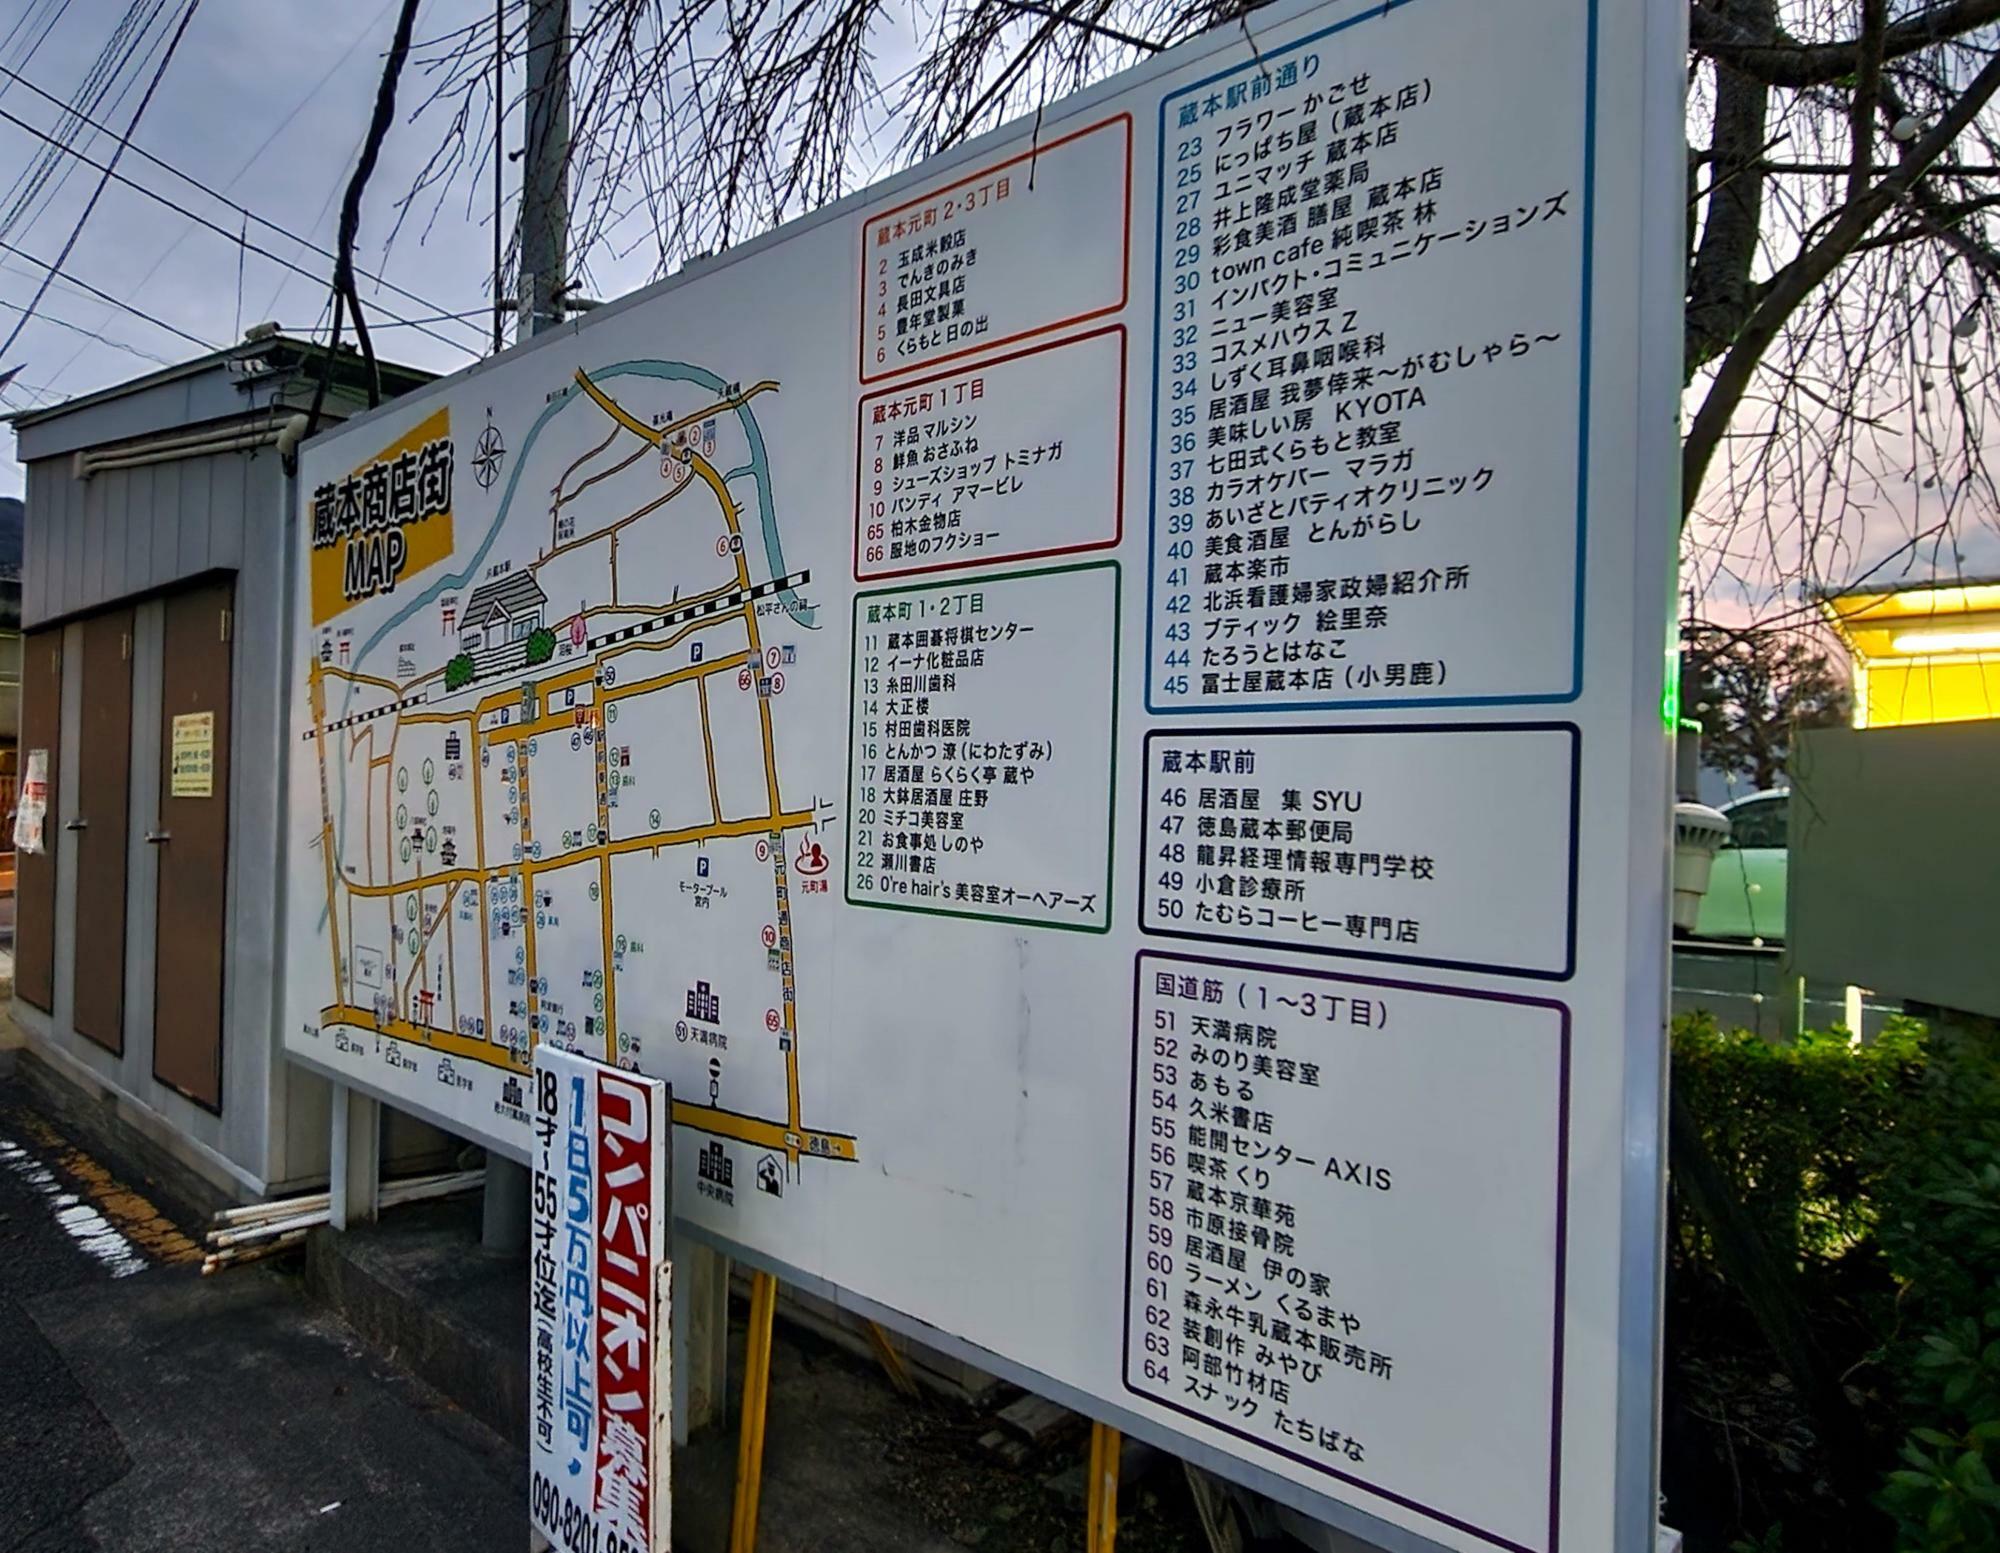 蔵本駅にある「蔵本商店街MAP」。